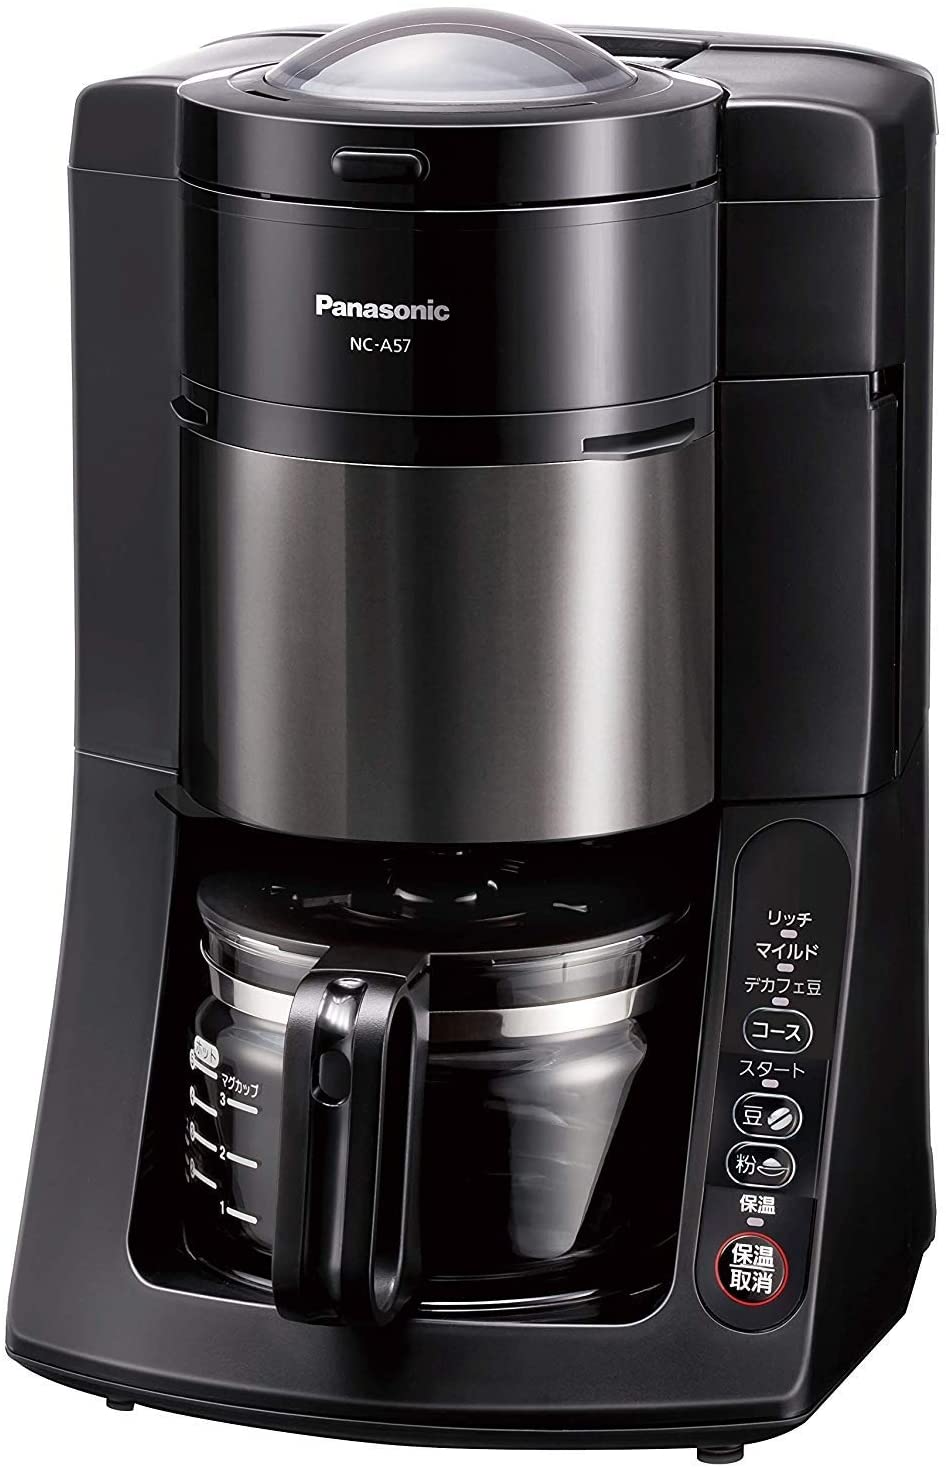 Panasonic(パナソニック) 沸騰浄水コーヒーメーカー NC-A57の商品画像サムネ1 